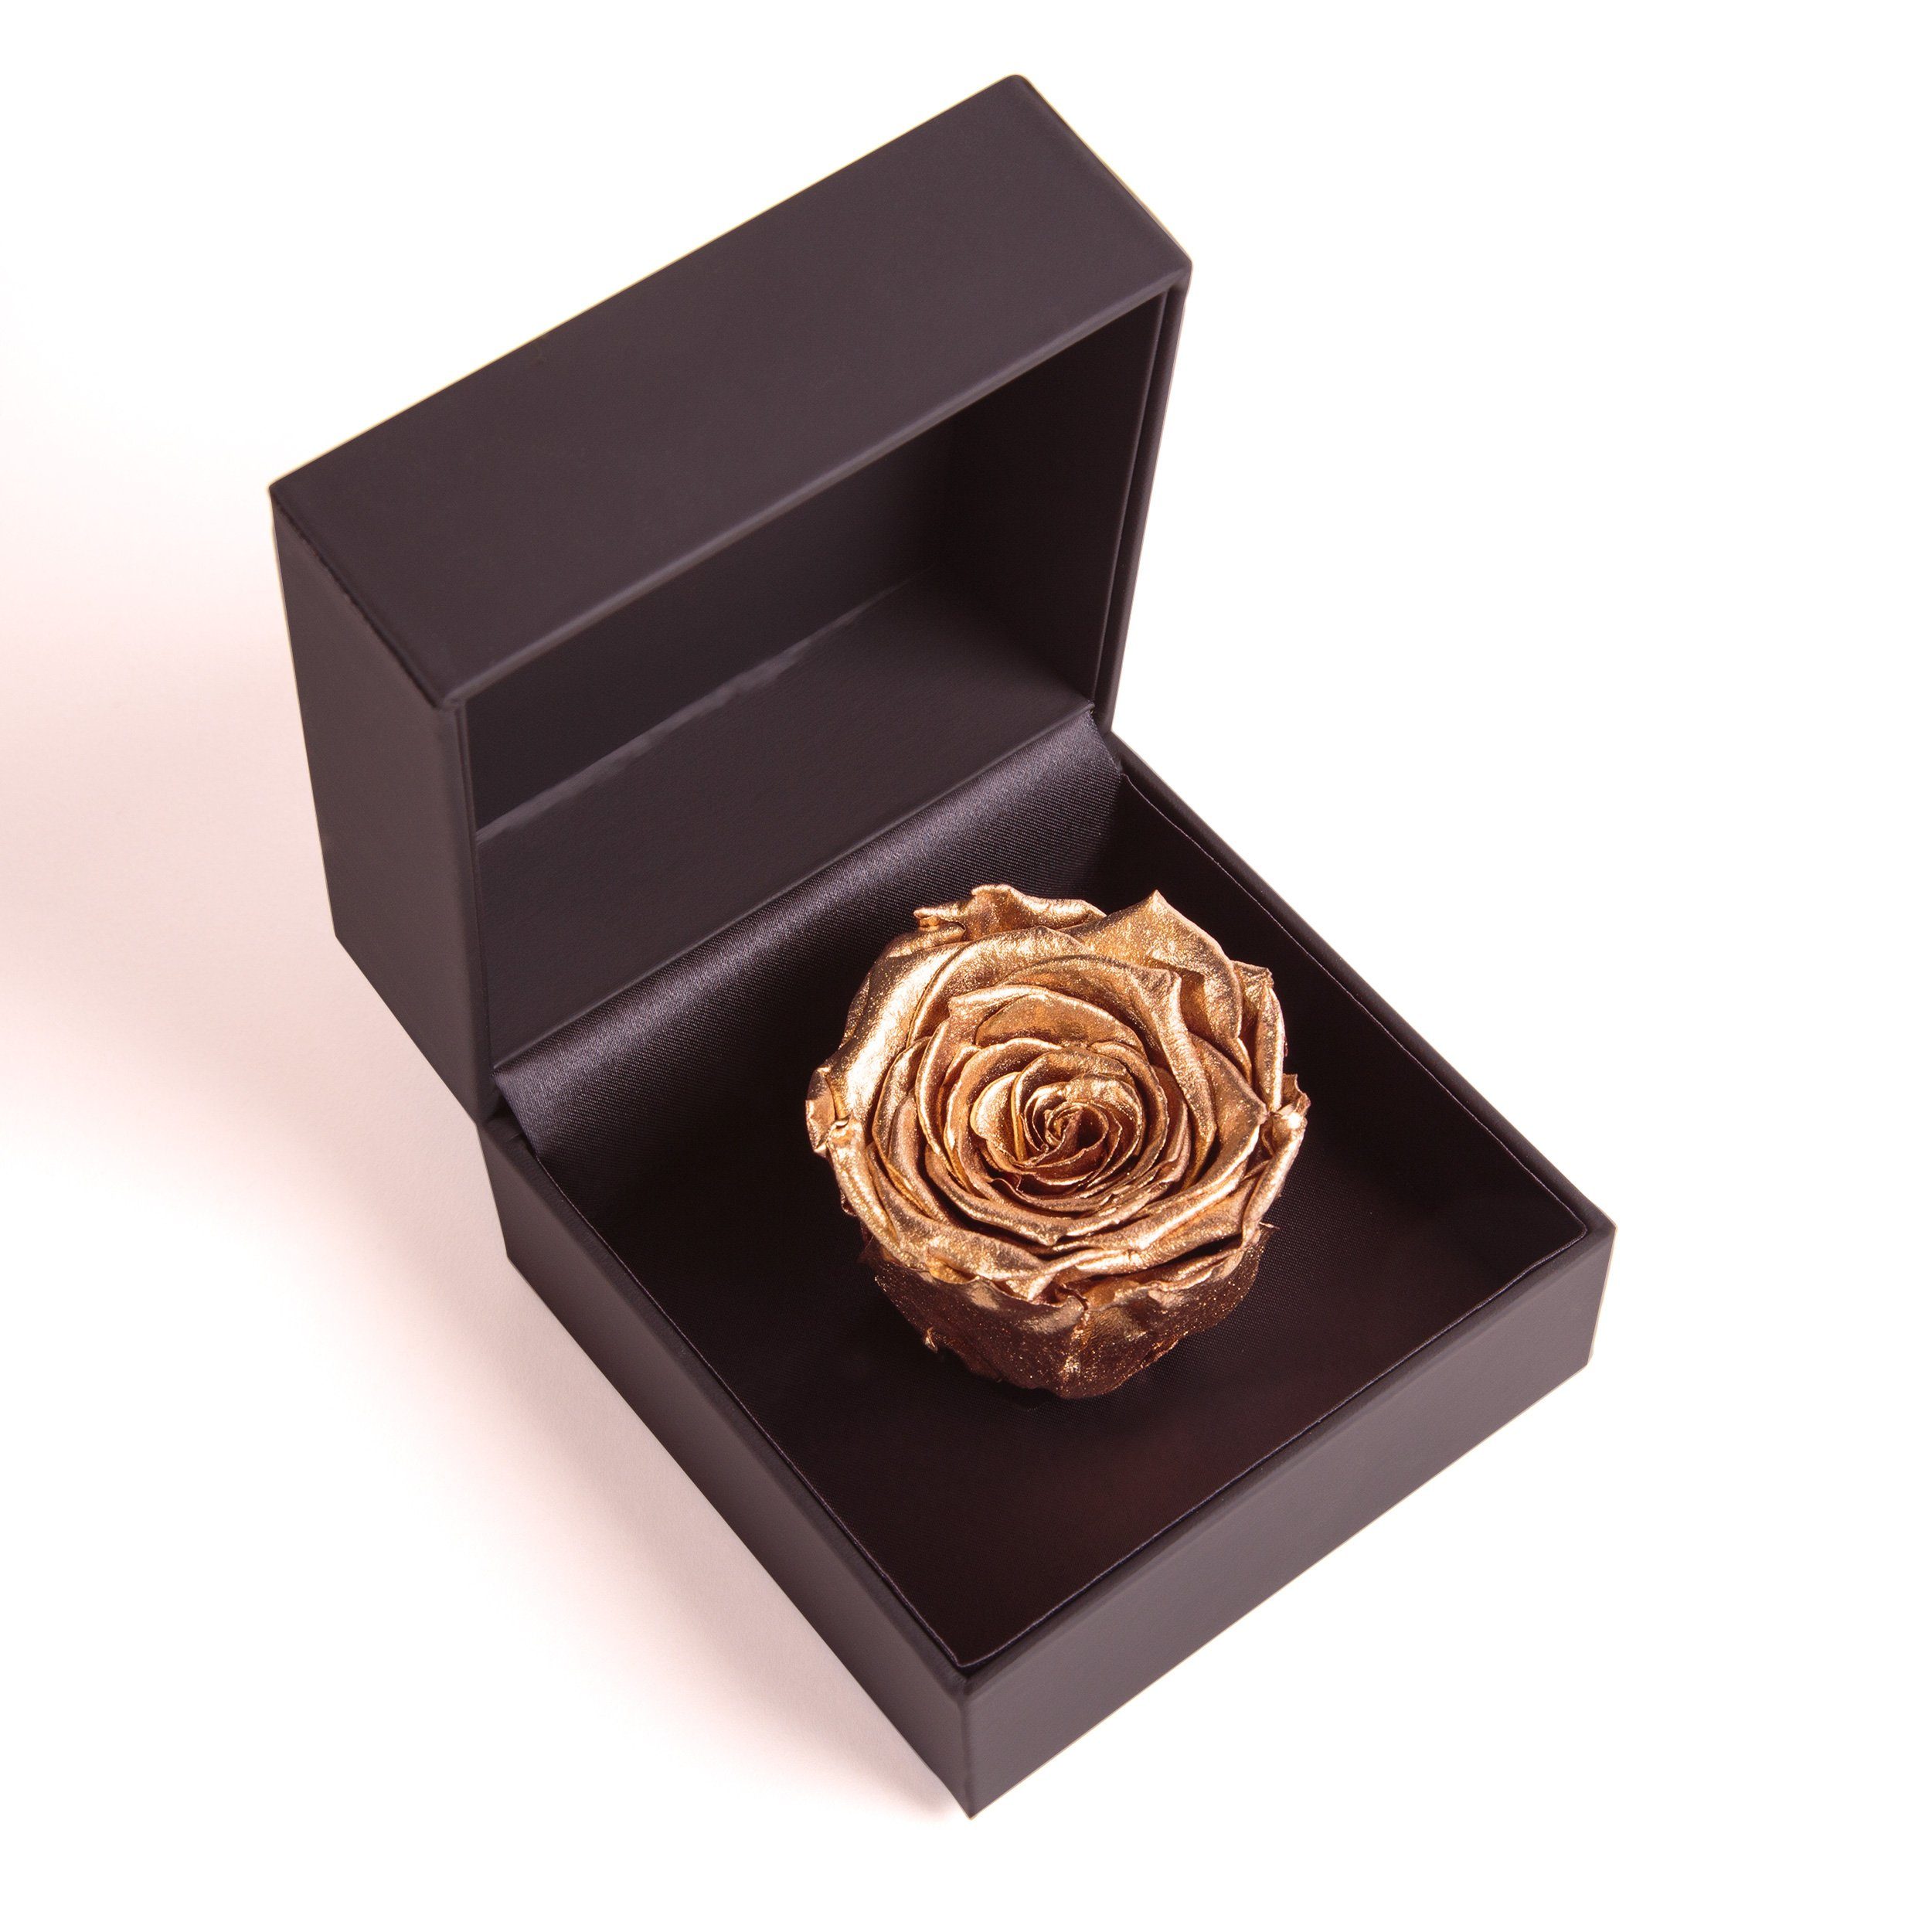 Rosenbox Infinity cm, 9 Kunstblume Rose ROSEMARIE SCHULZ konserviert Rose Heidelberg, Gold Höhe Groß Ringdose Box in Rose, Ringbox Langlebige